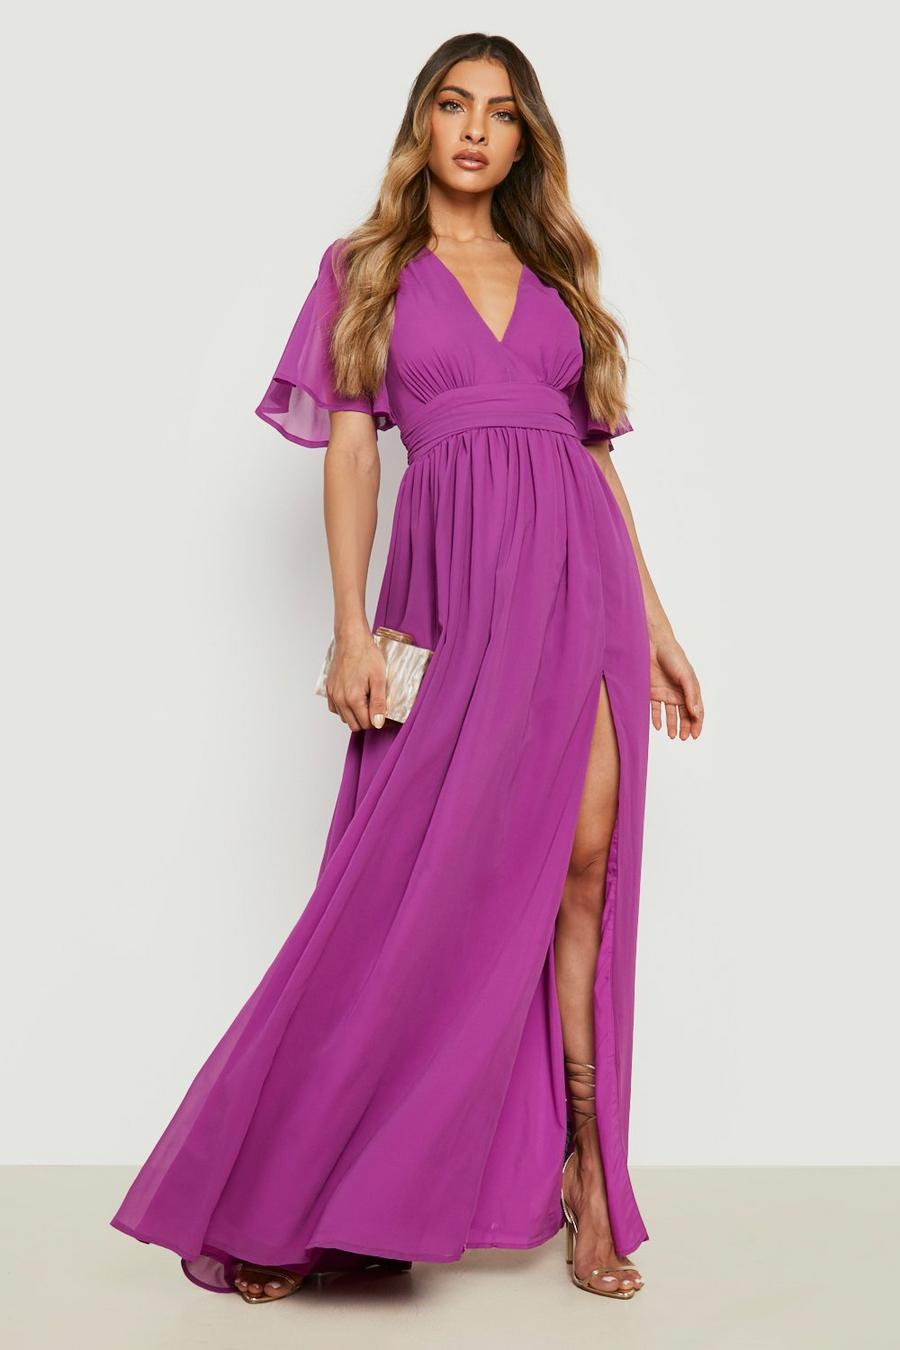 Jewel purple Chiffon Plunge Rouched Maxi Dress